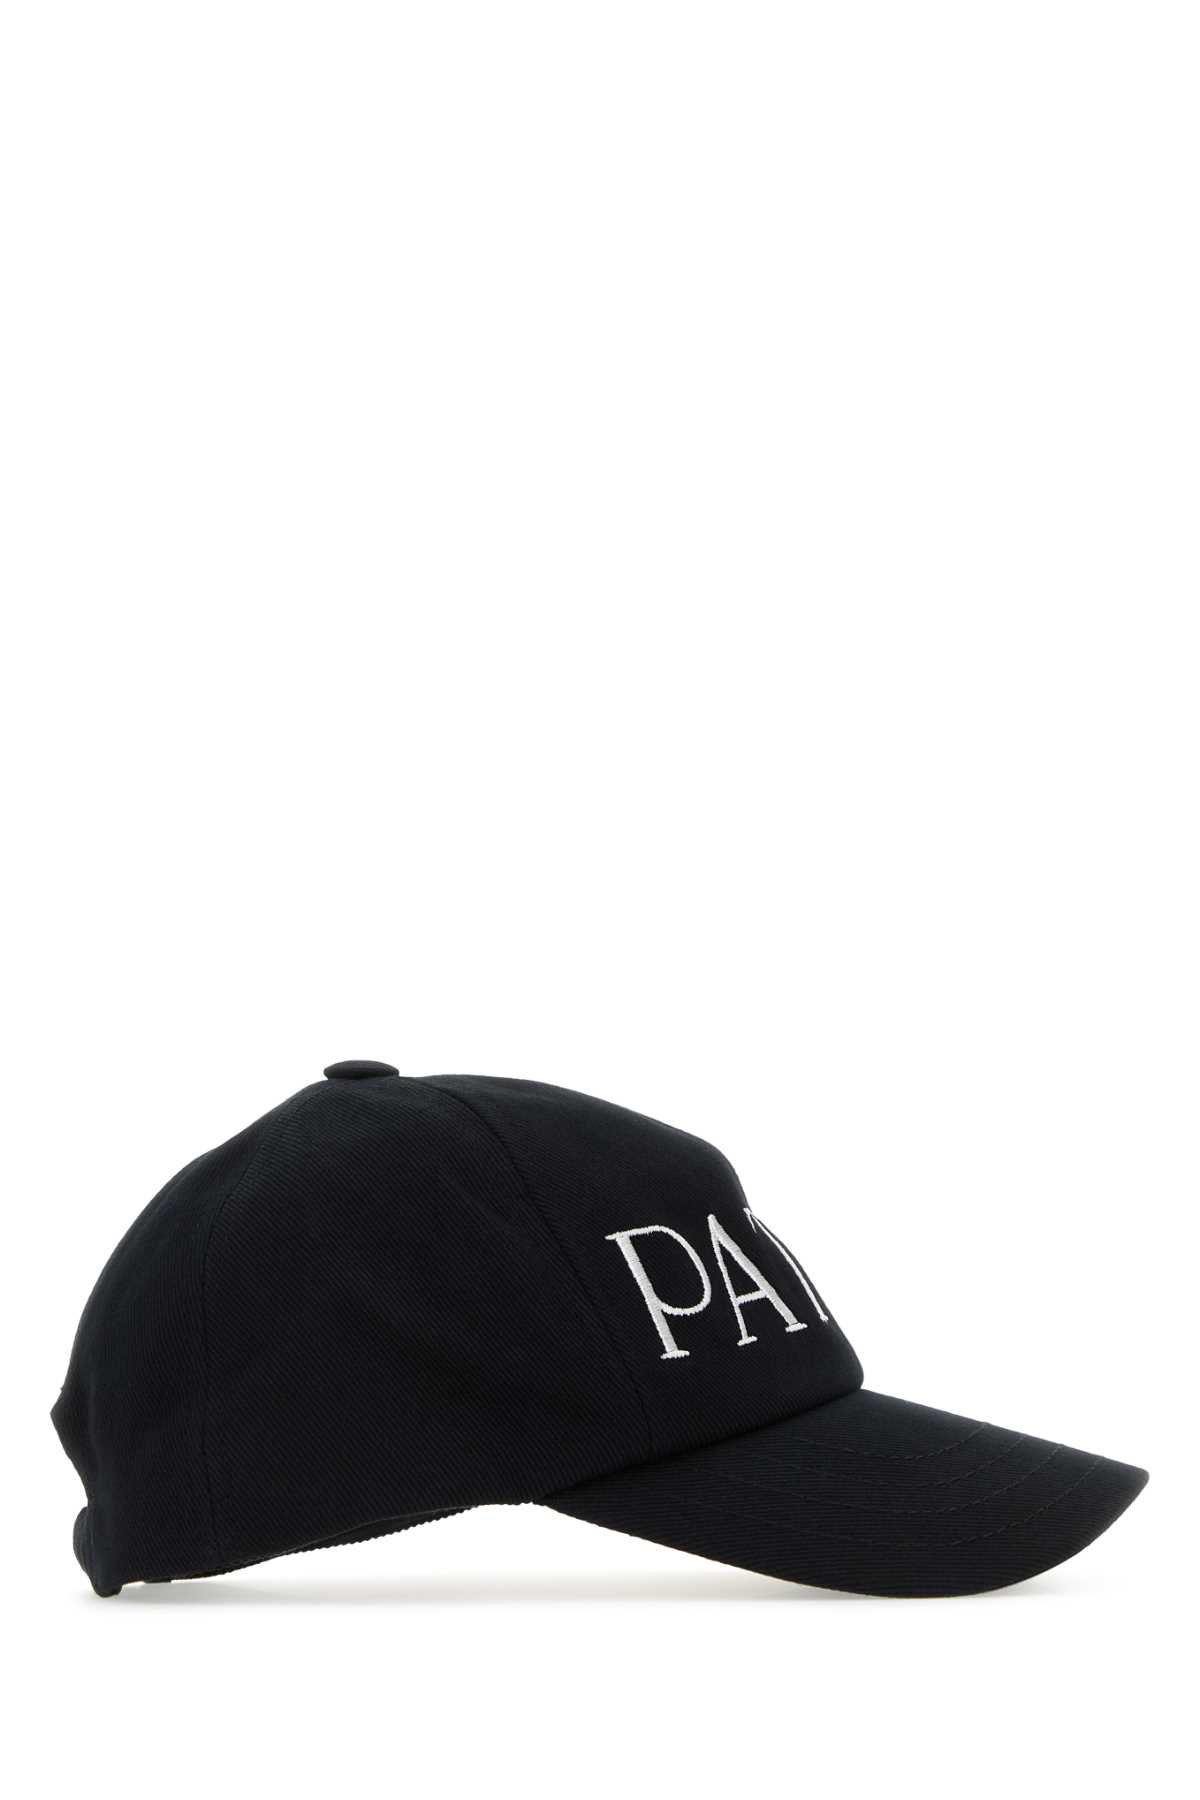 Shop Patou Black Cotton Baseball Cap In 999b